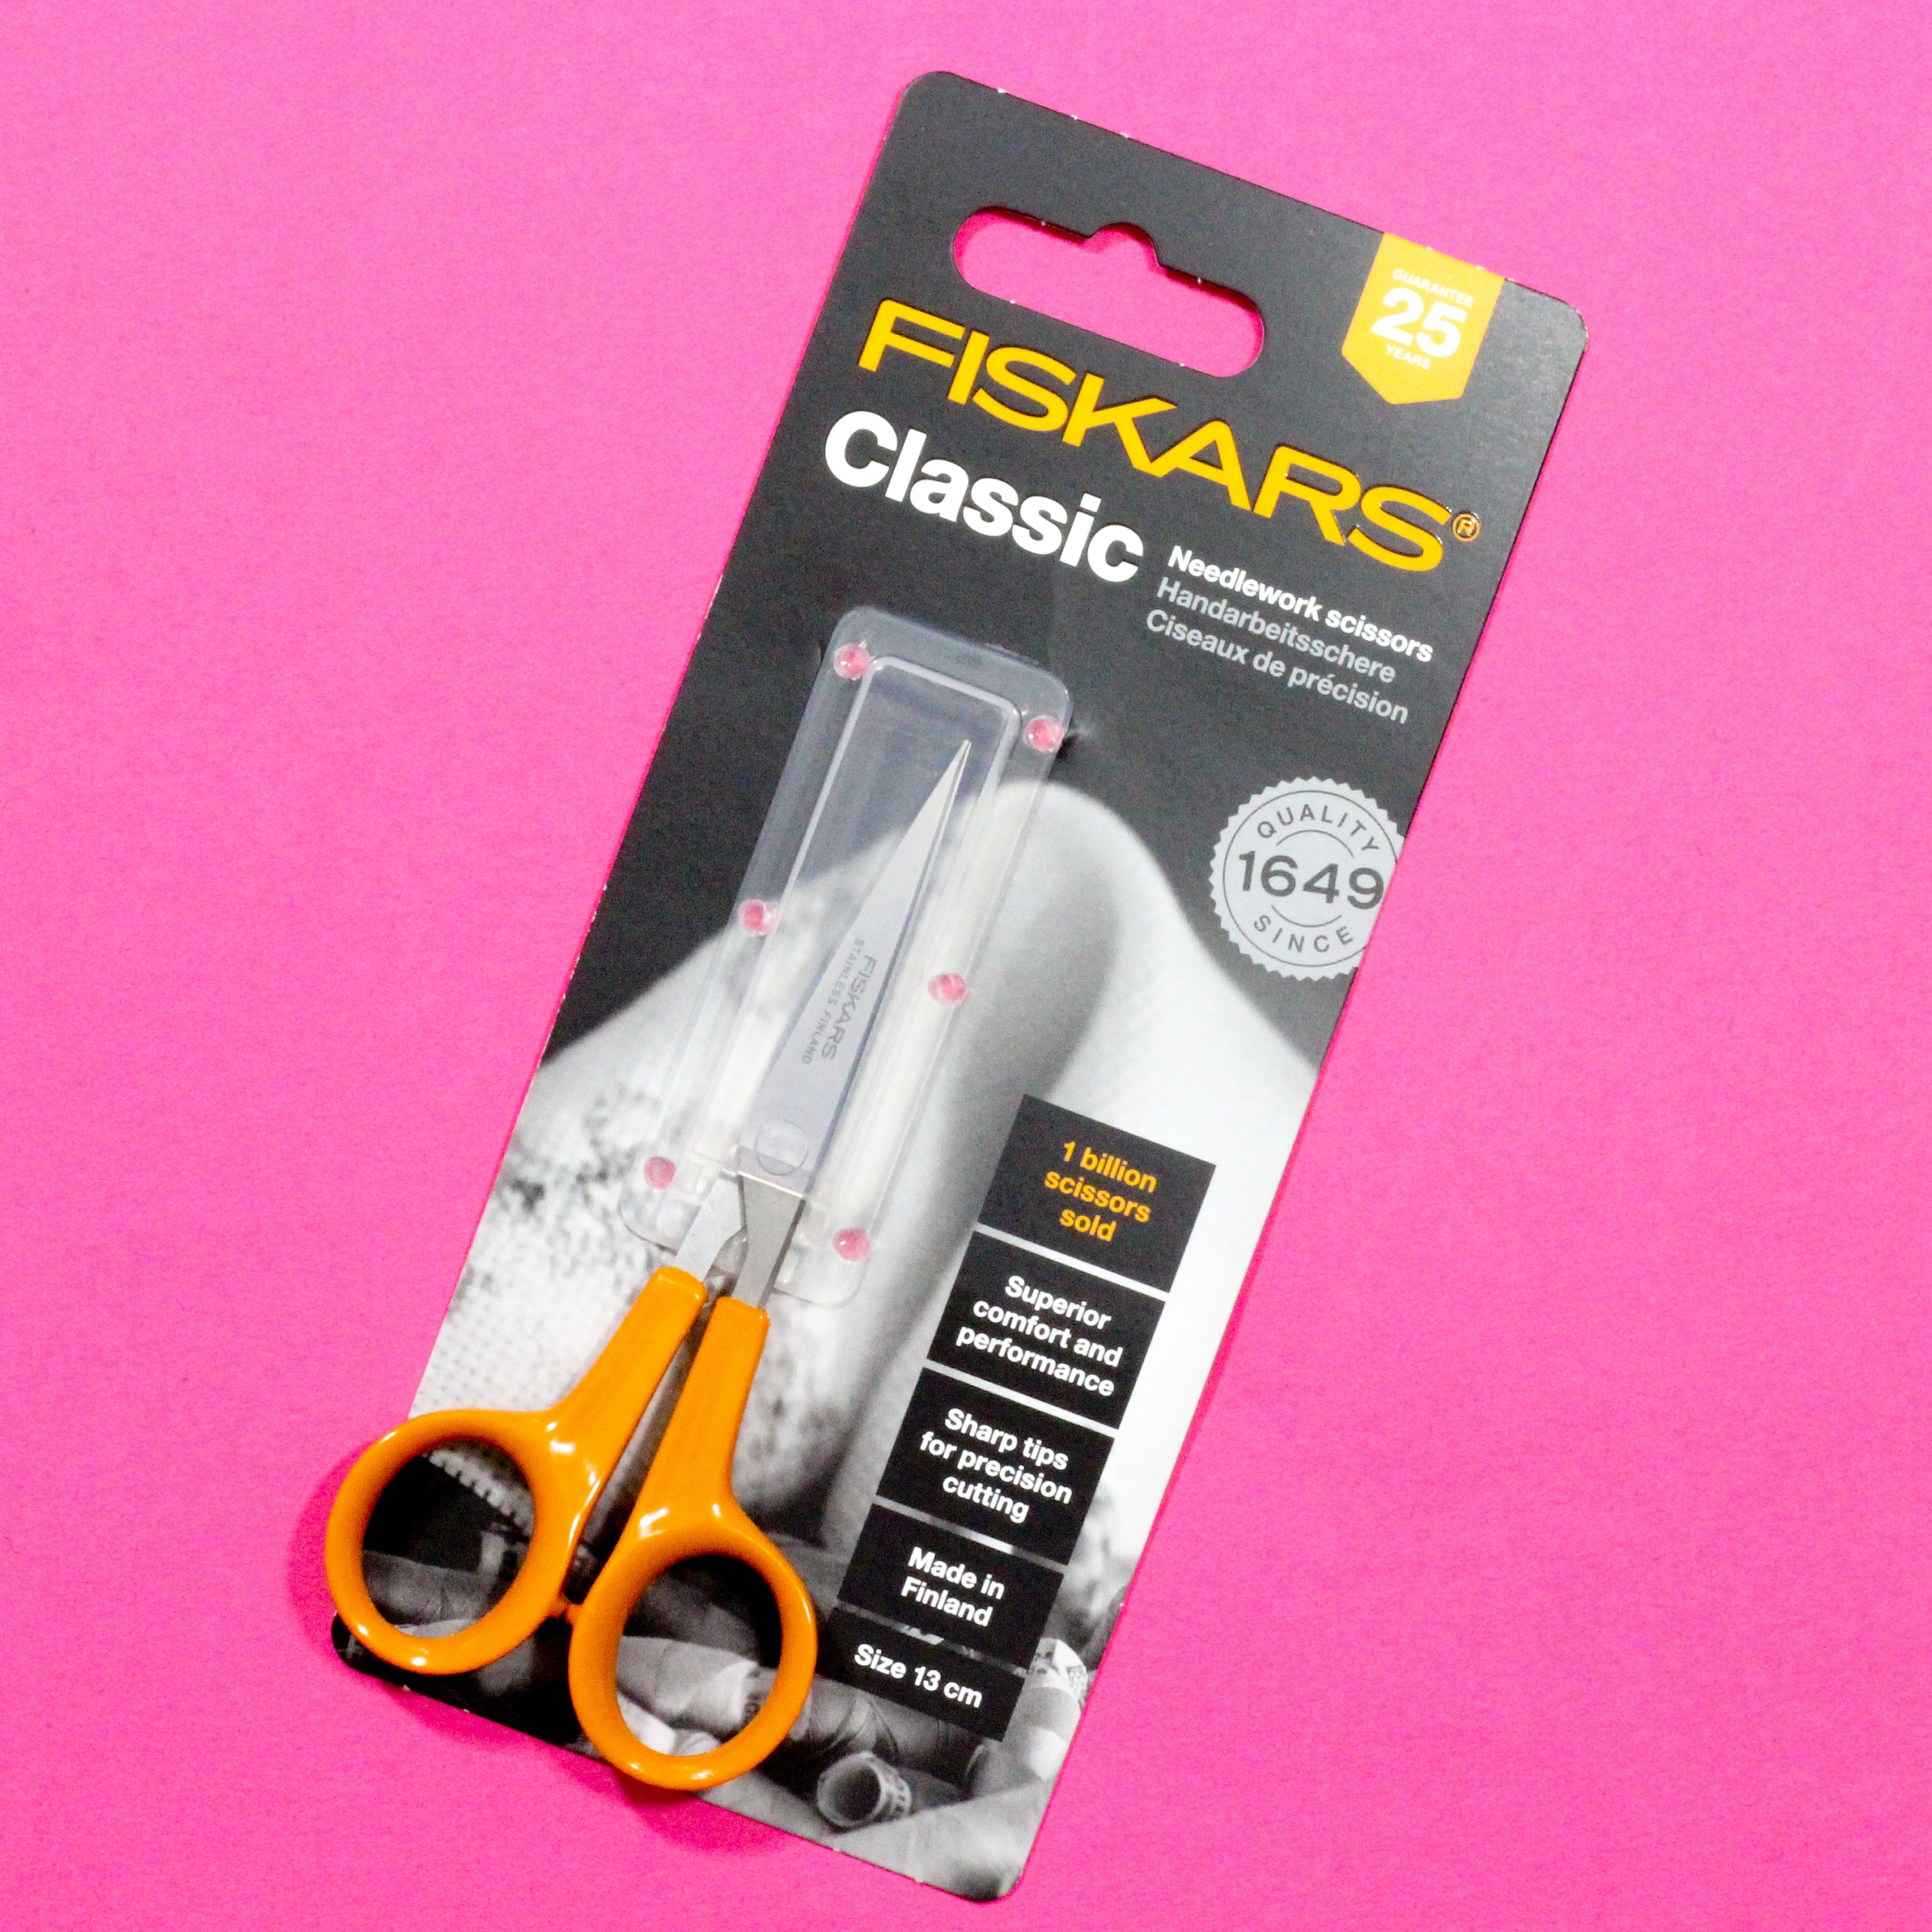 Created with Fiskars 8in Scissors Sew Bold - Fiskars